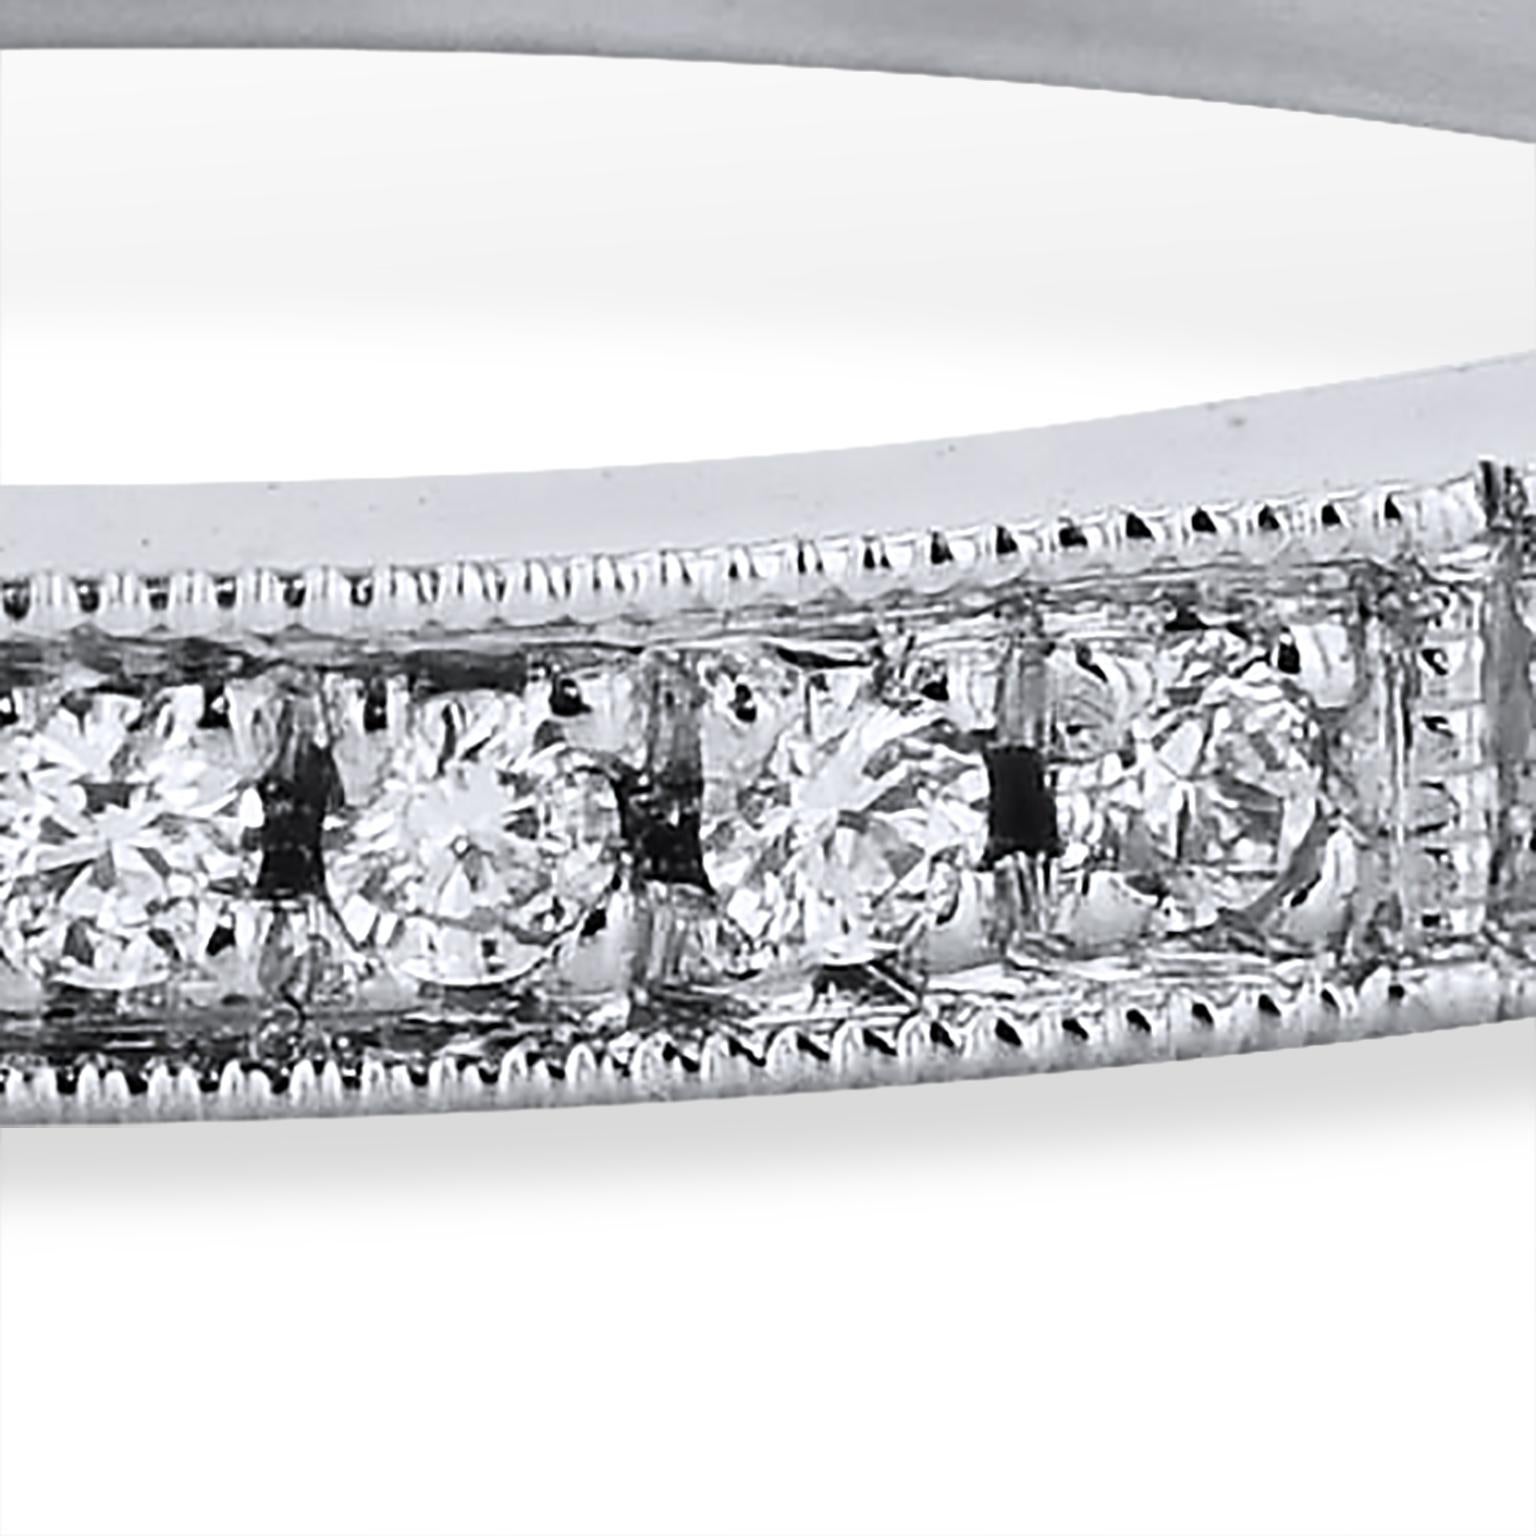 0.19 Karat runde Diamanten Pave Platin Eternity Band Ring Handmade by H & H Jewels

Dieser handgefertigte Ring besteht aus 0,19 Karat runden Diamanten (G/H/VS), die auf einem Platinband eingefasst sind. Dieser Ring bietet ein Mosaik aus Licht und